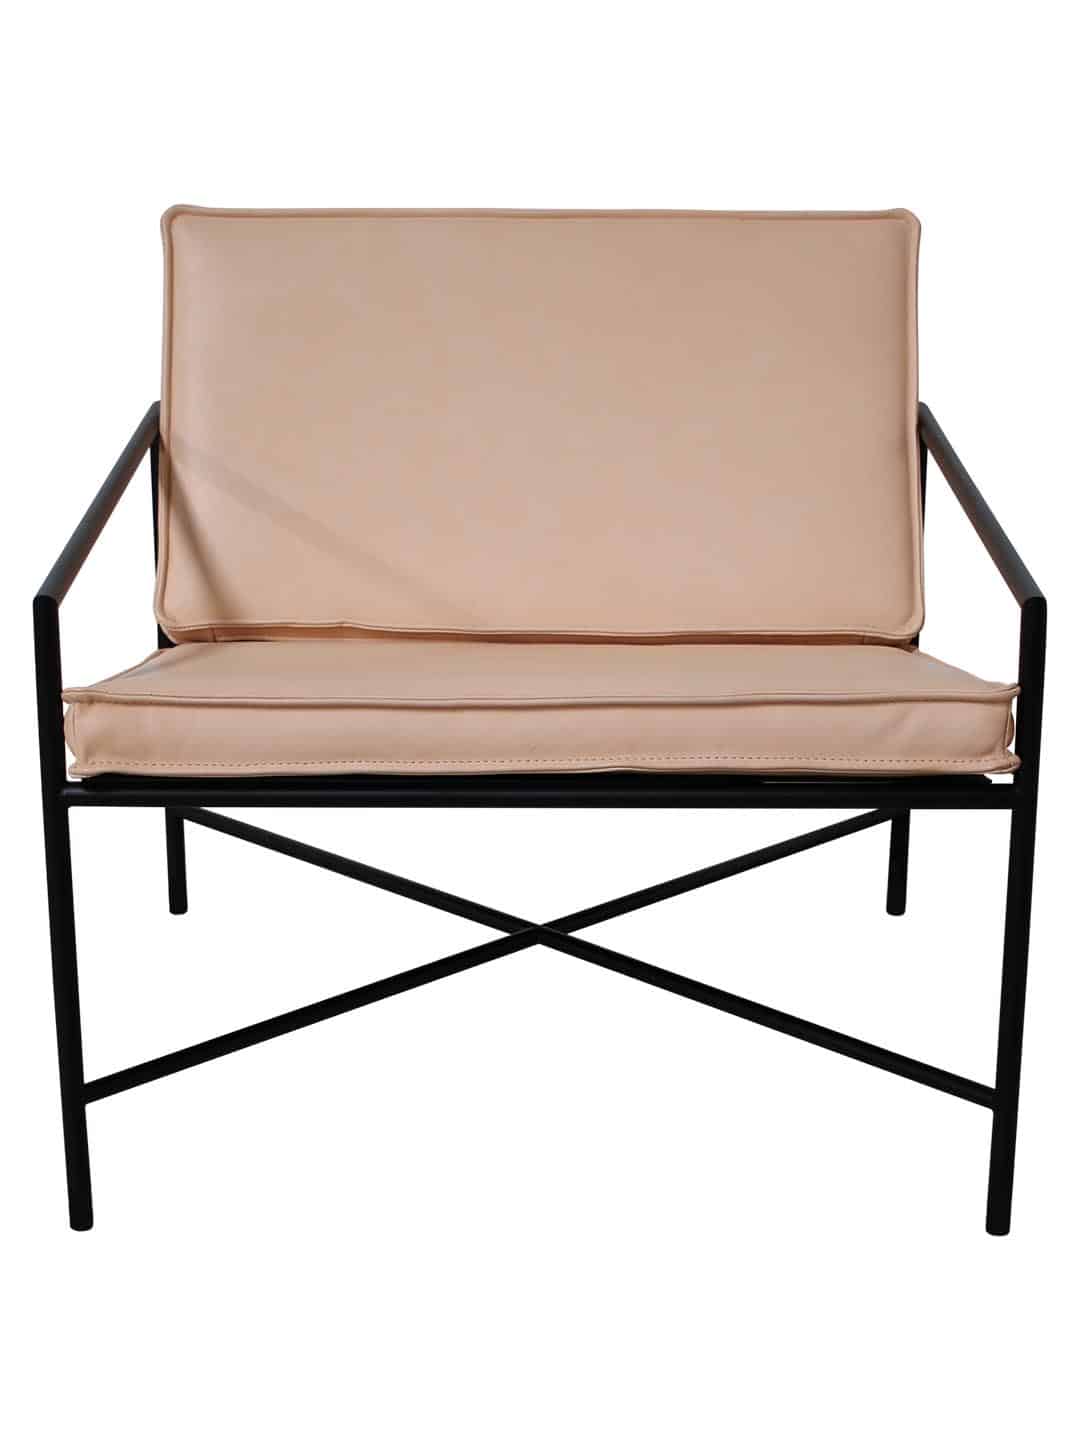 Дизайнерское кресло для отдыха HANDVARK светло-коричневого цвета